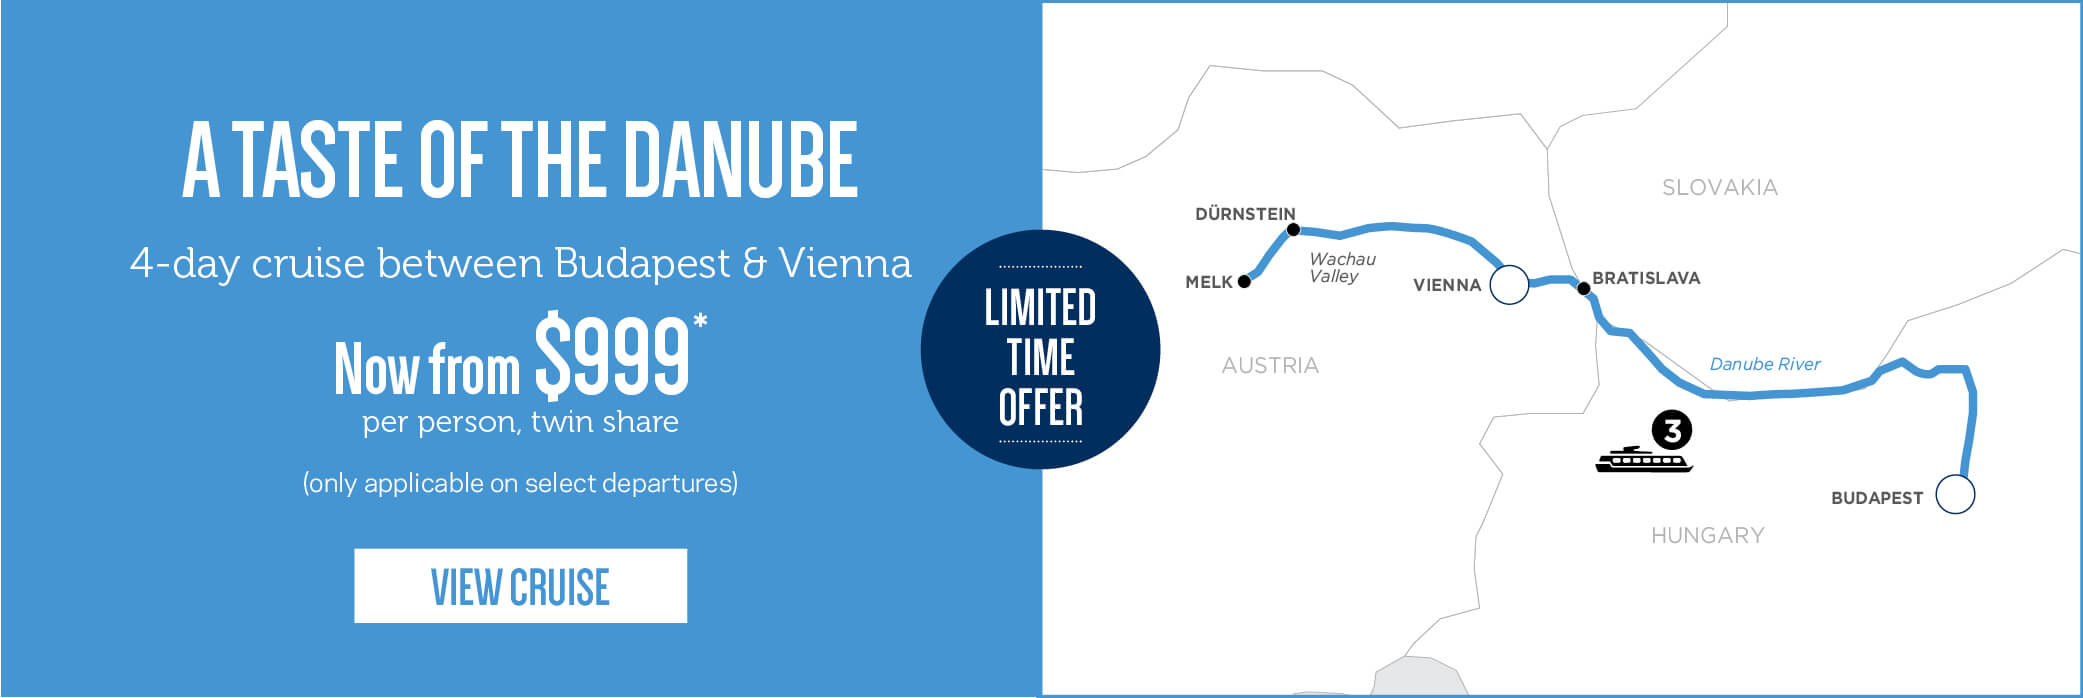 A Taste of the Danube for $999 pp